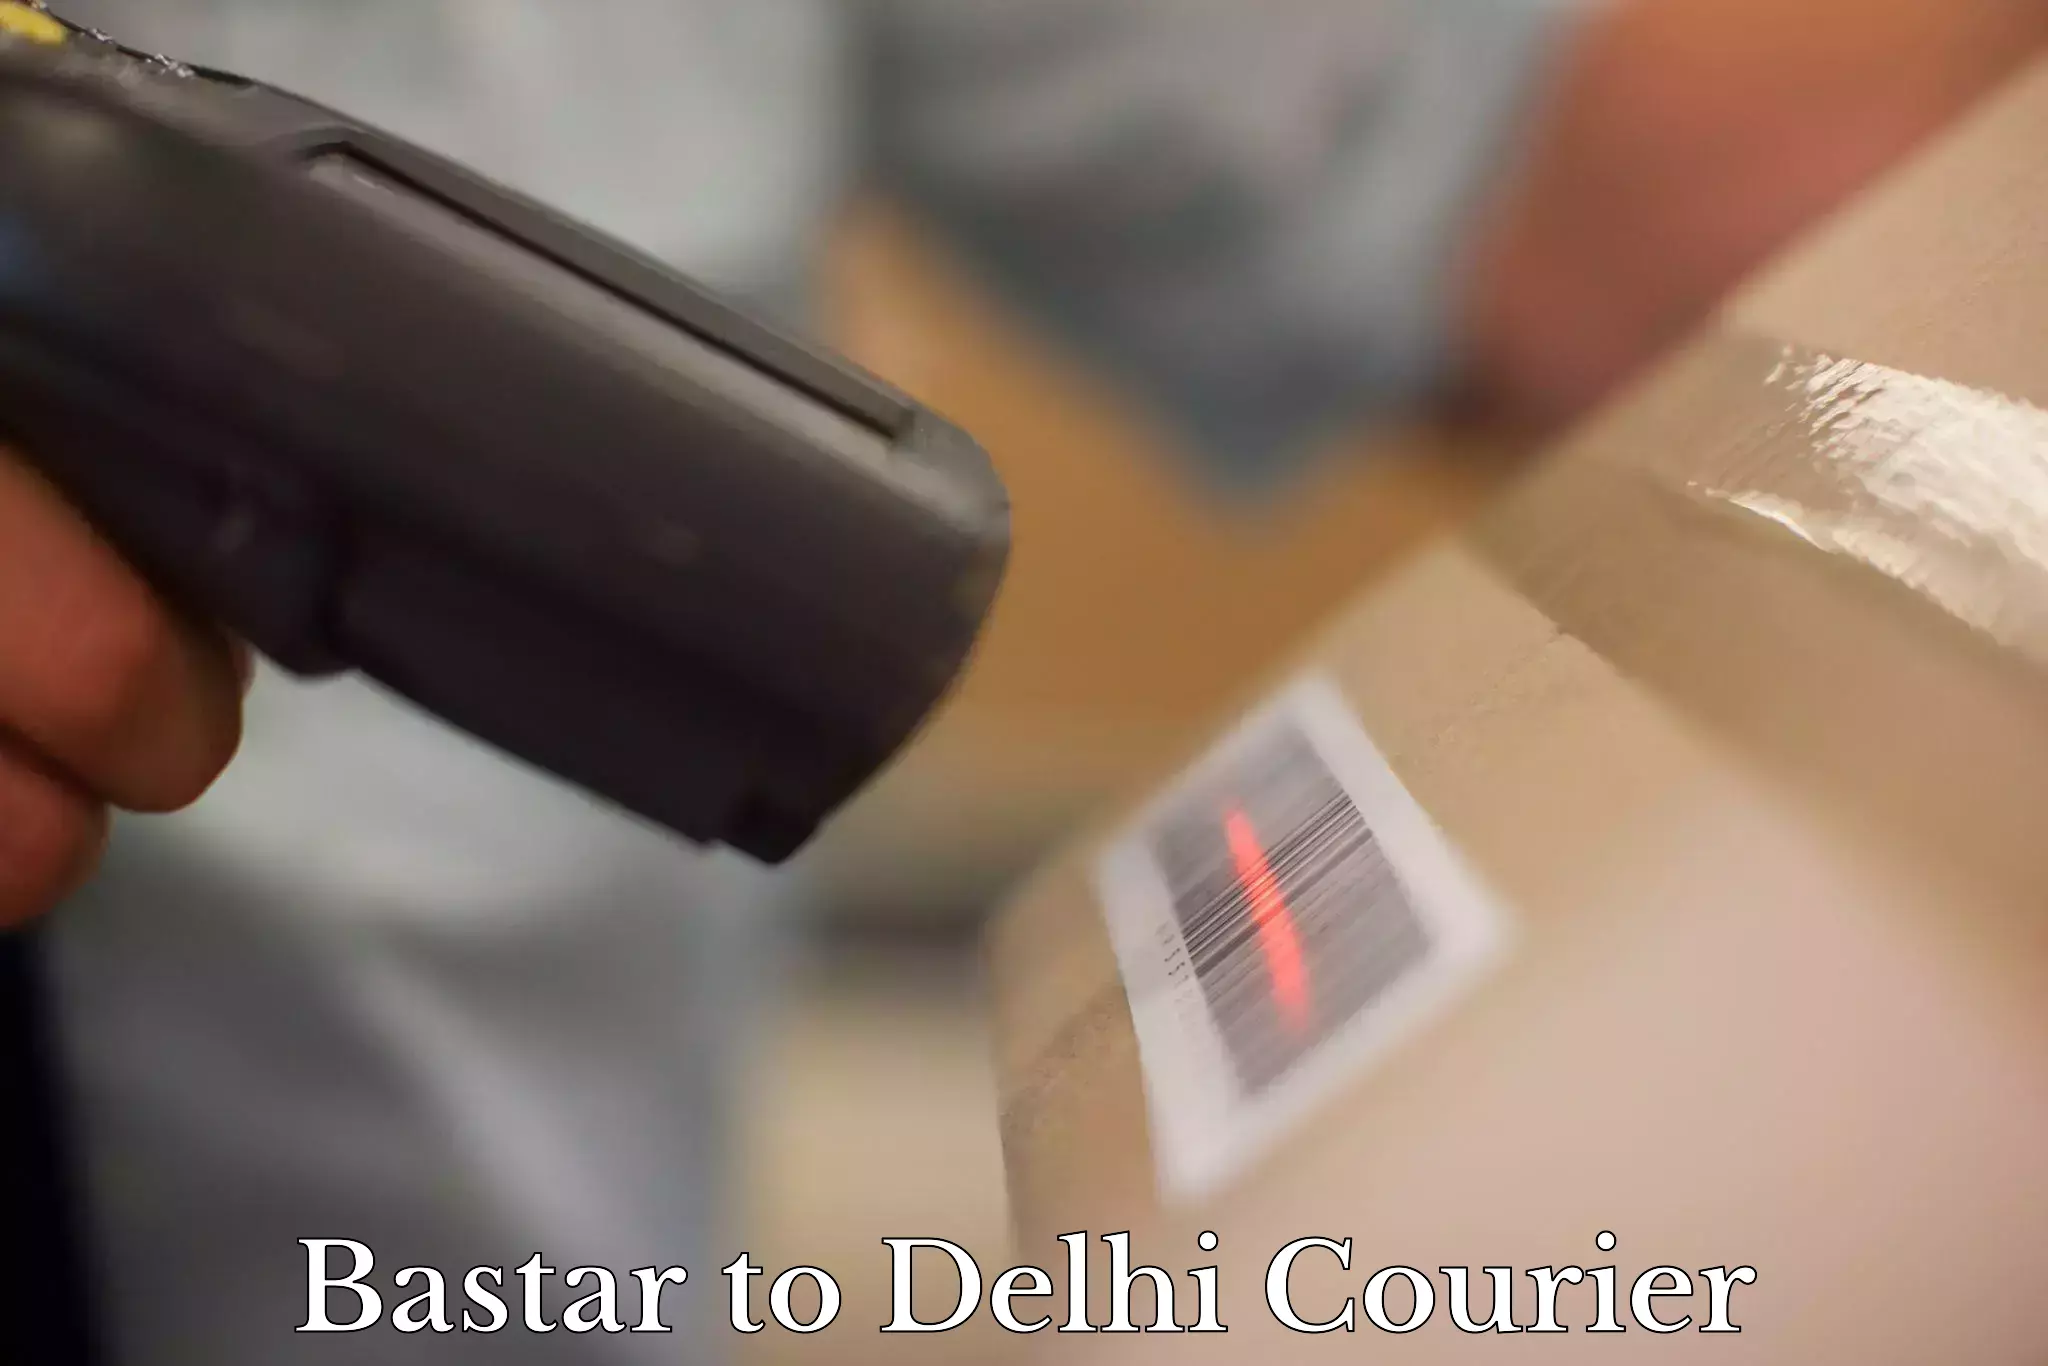 Furniture moving experts Bastar to Delhi Technological University DTU